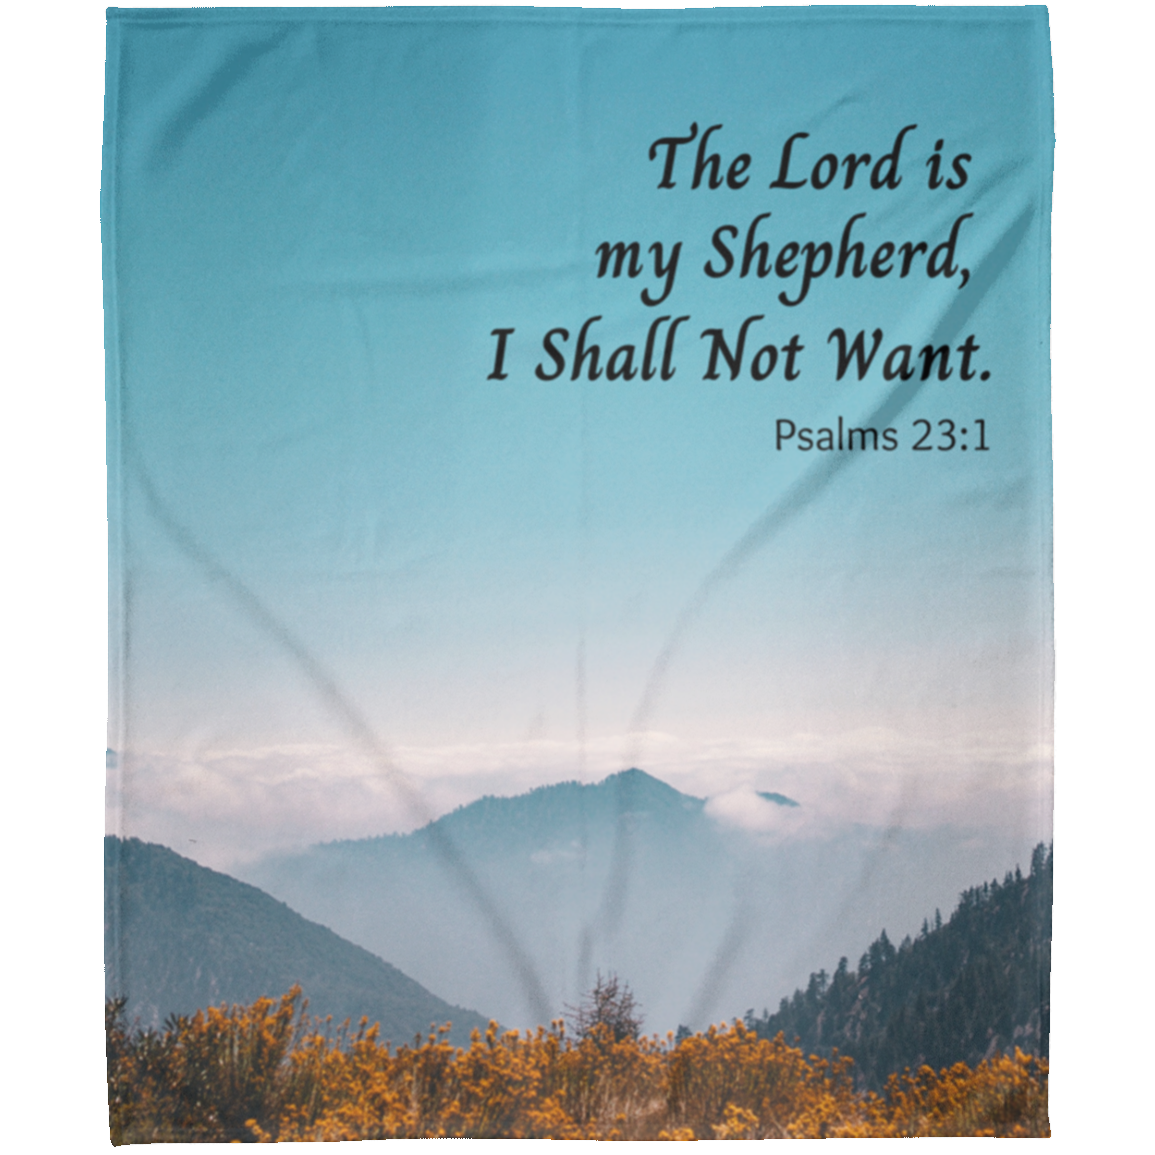 The Lord is my Shepherd - Arctic Fleece Blanket 50x60